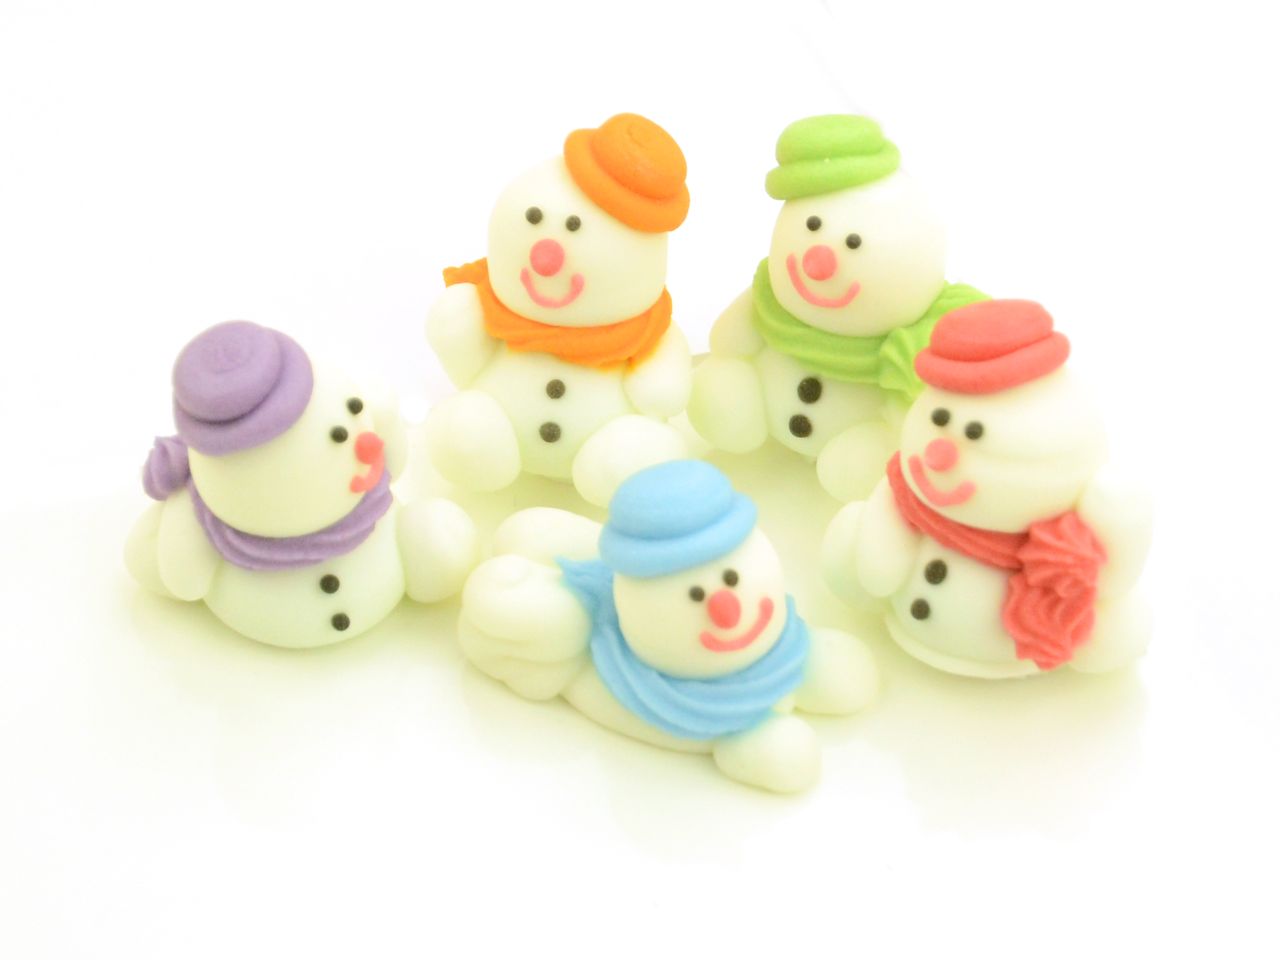 Zuckerfiguren: Schneemänner, Weiß & bunt, 5 Designs à 3 x 2 x 3 cm